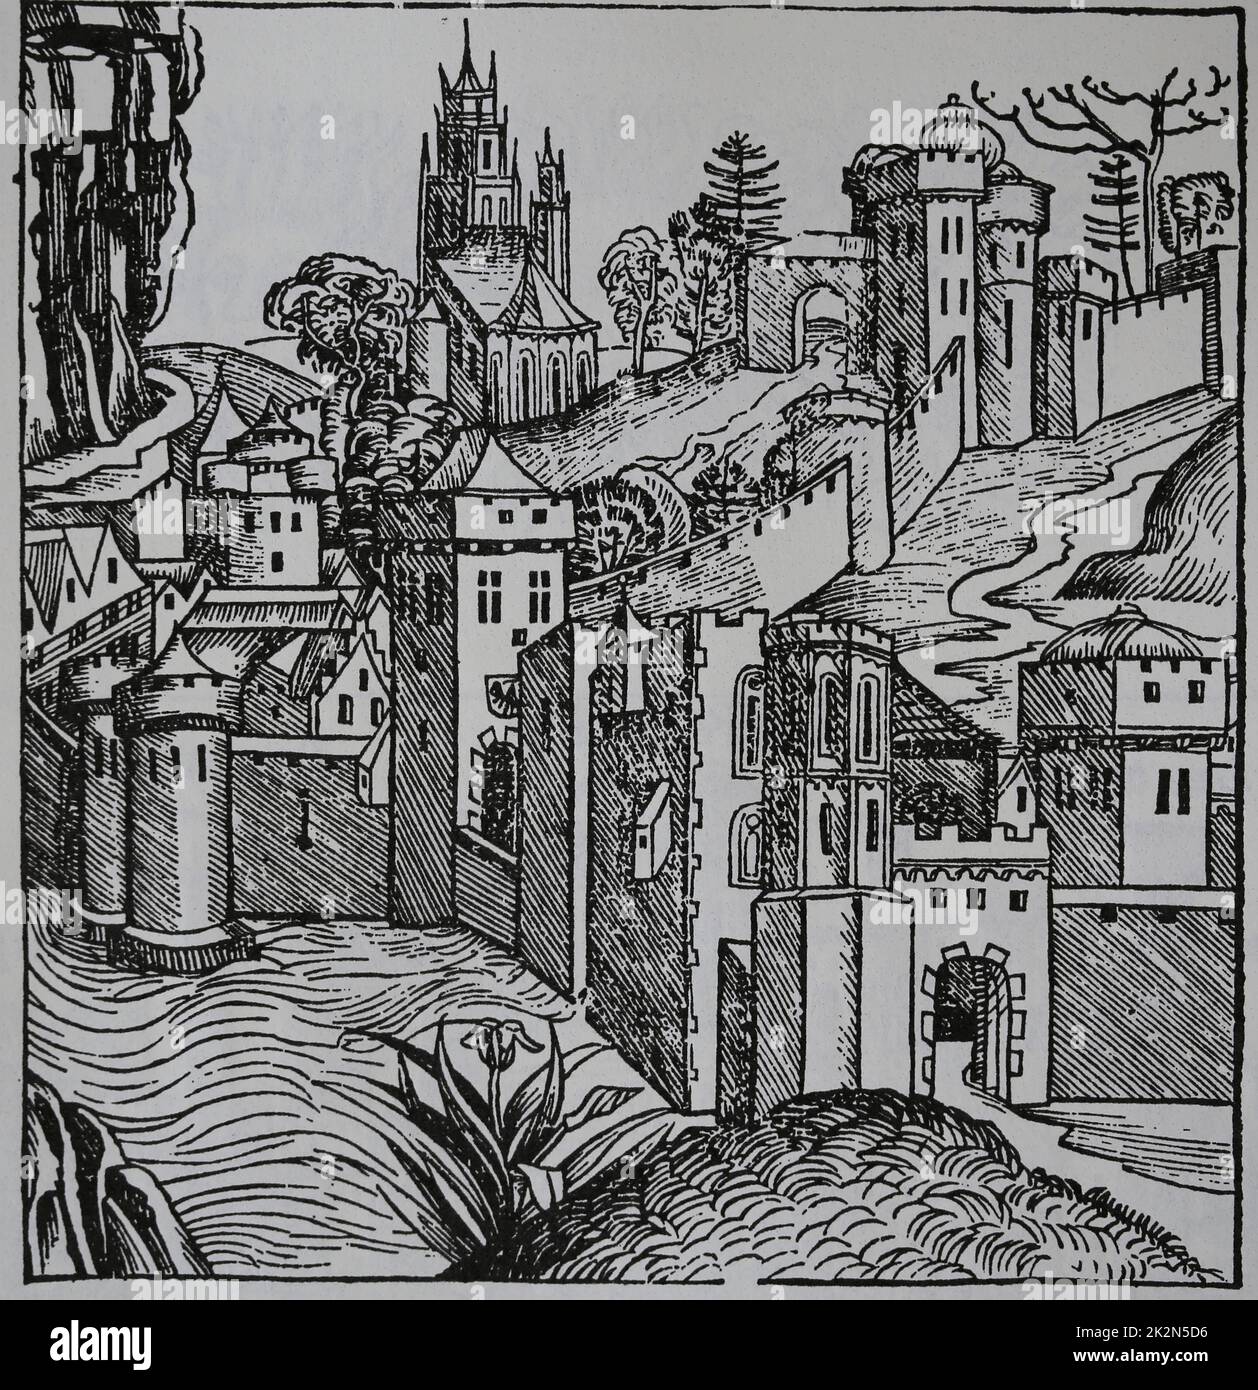 Mepmhis. Grabado por la Crónica de Nuremberg, siglo 15th. Foto de stock